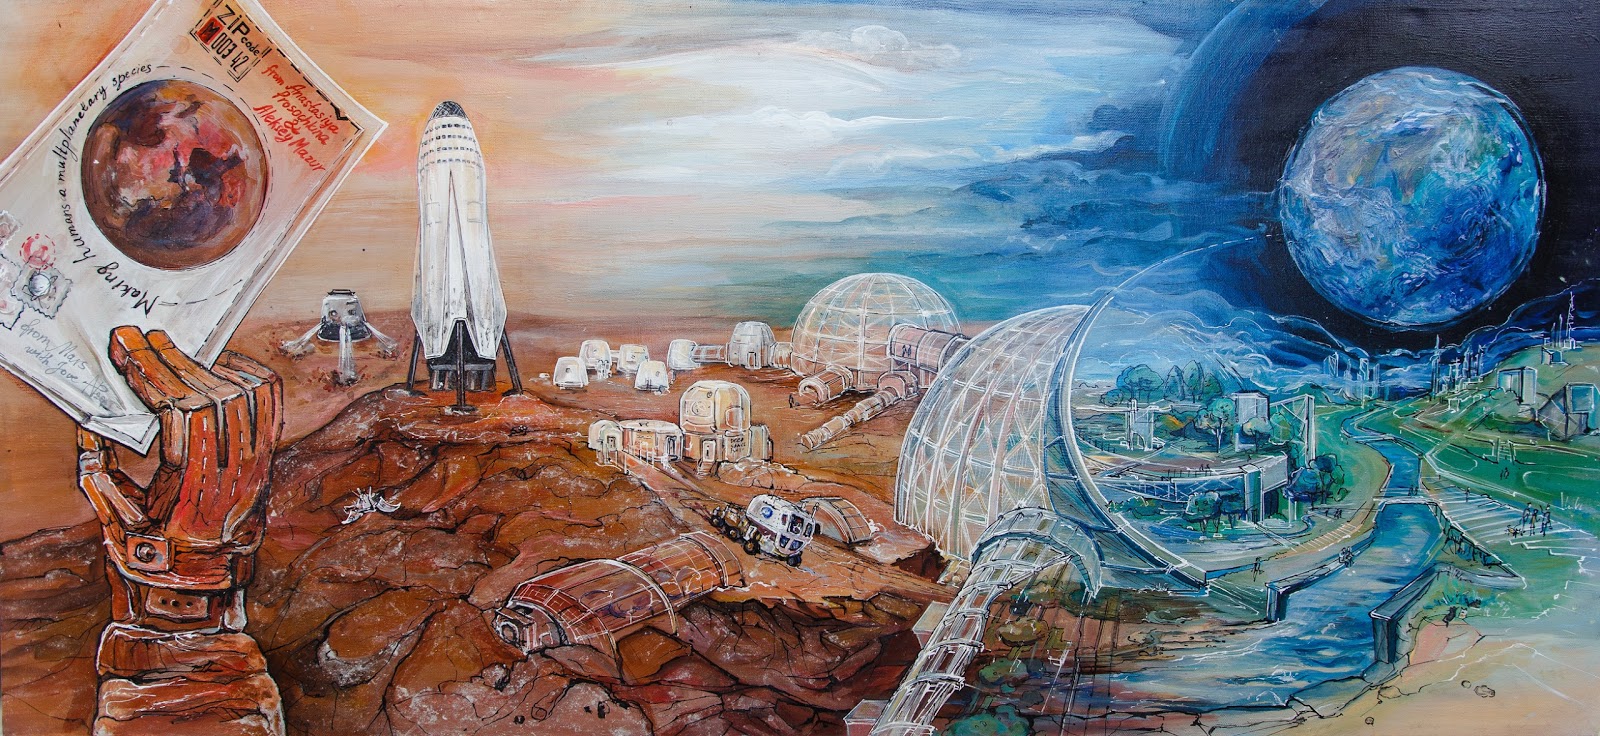 Terraforming Mars by Anastasiya Prosochkina & Aleksey Mazur